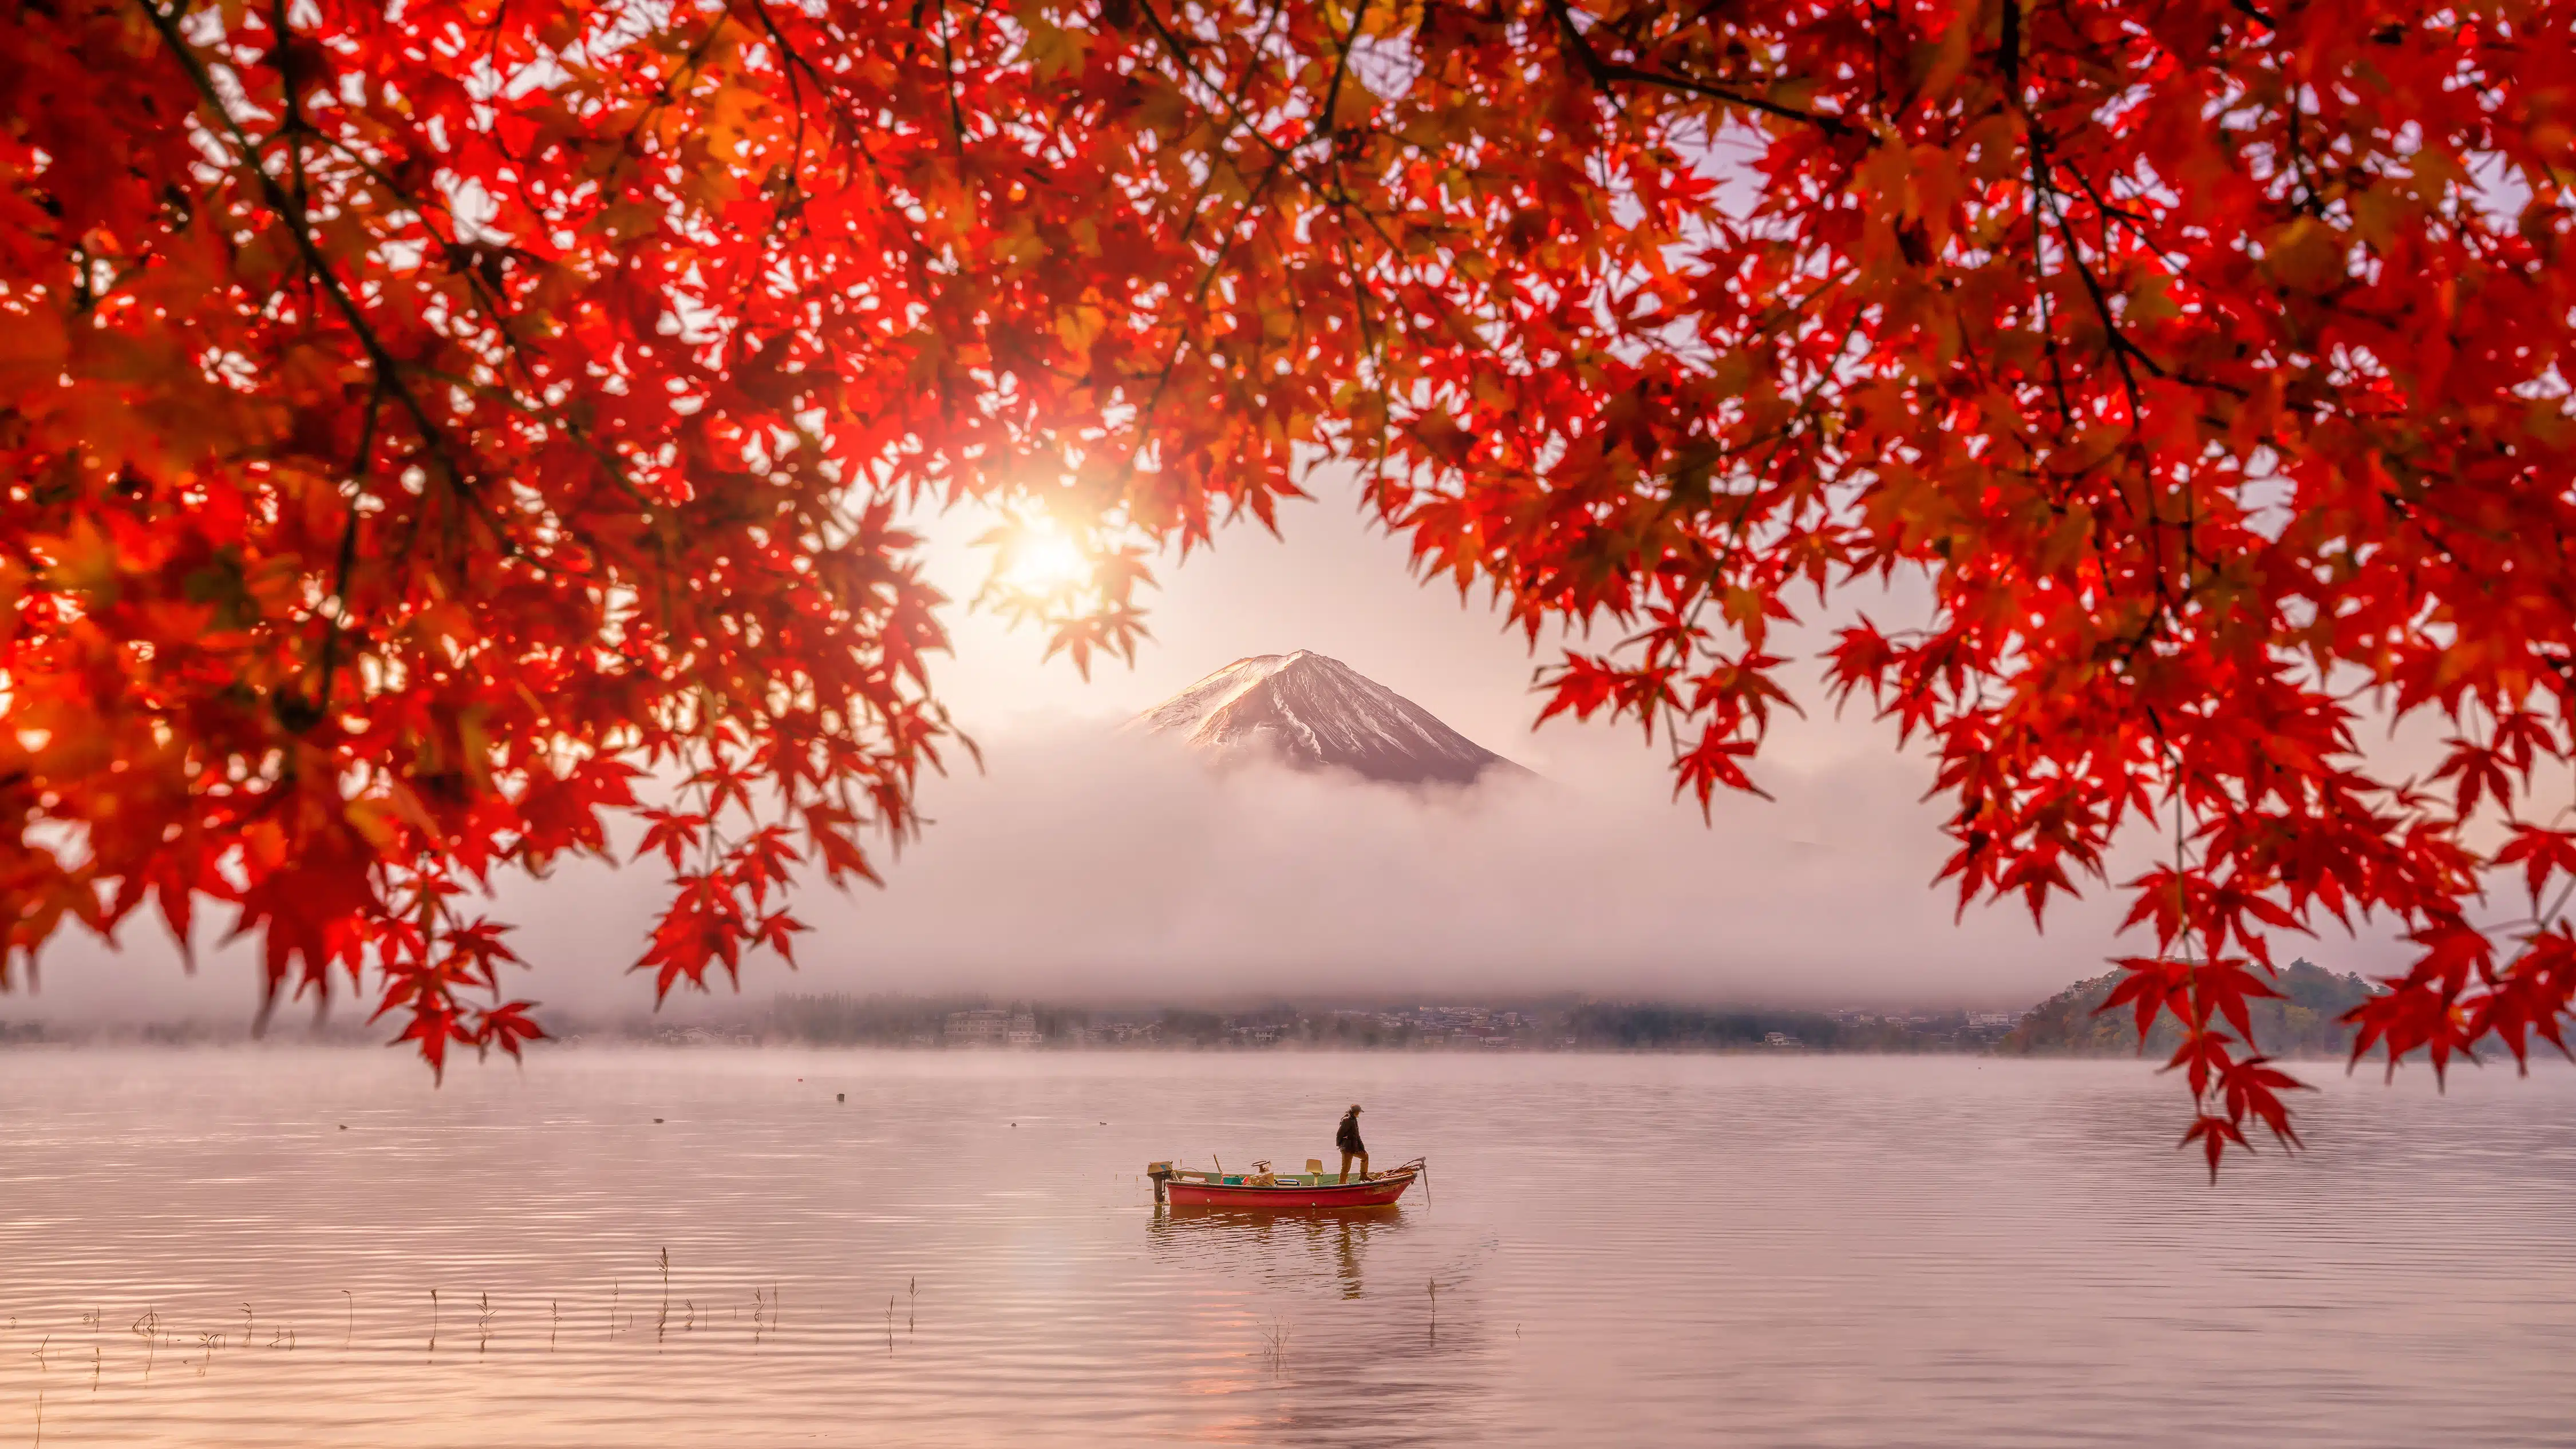 lone boat in the lake near Mount Fuji in autumn